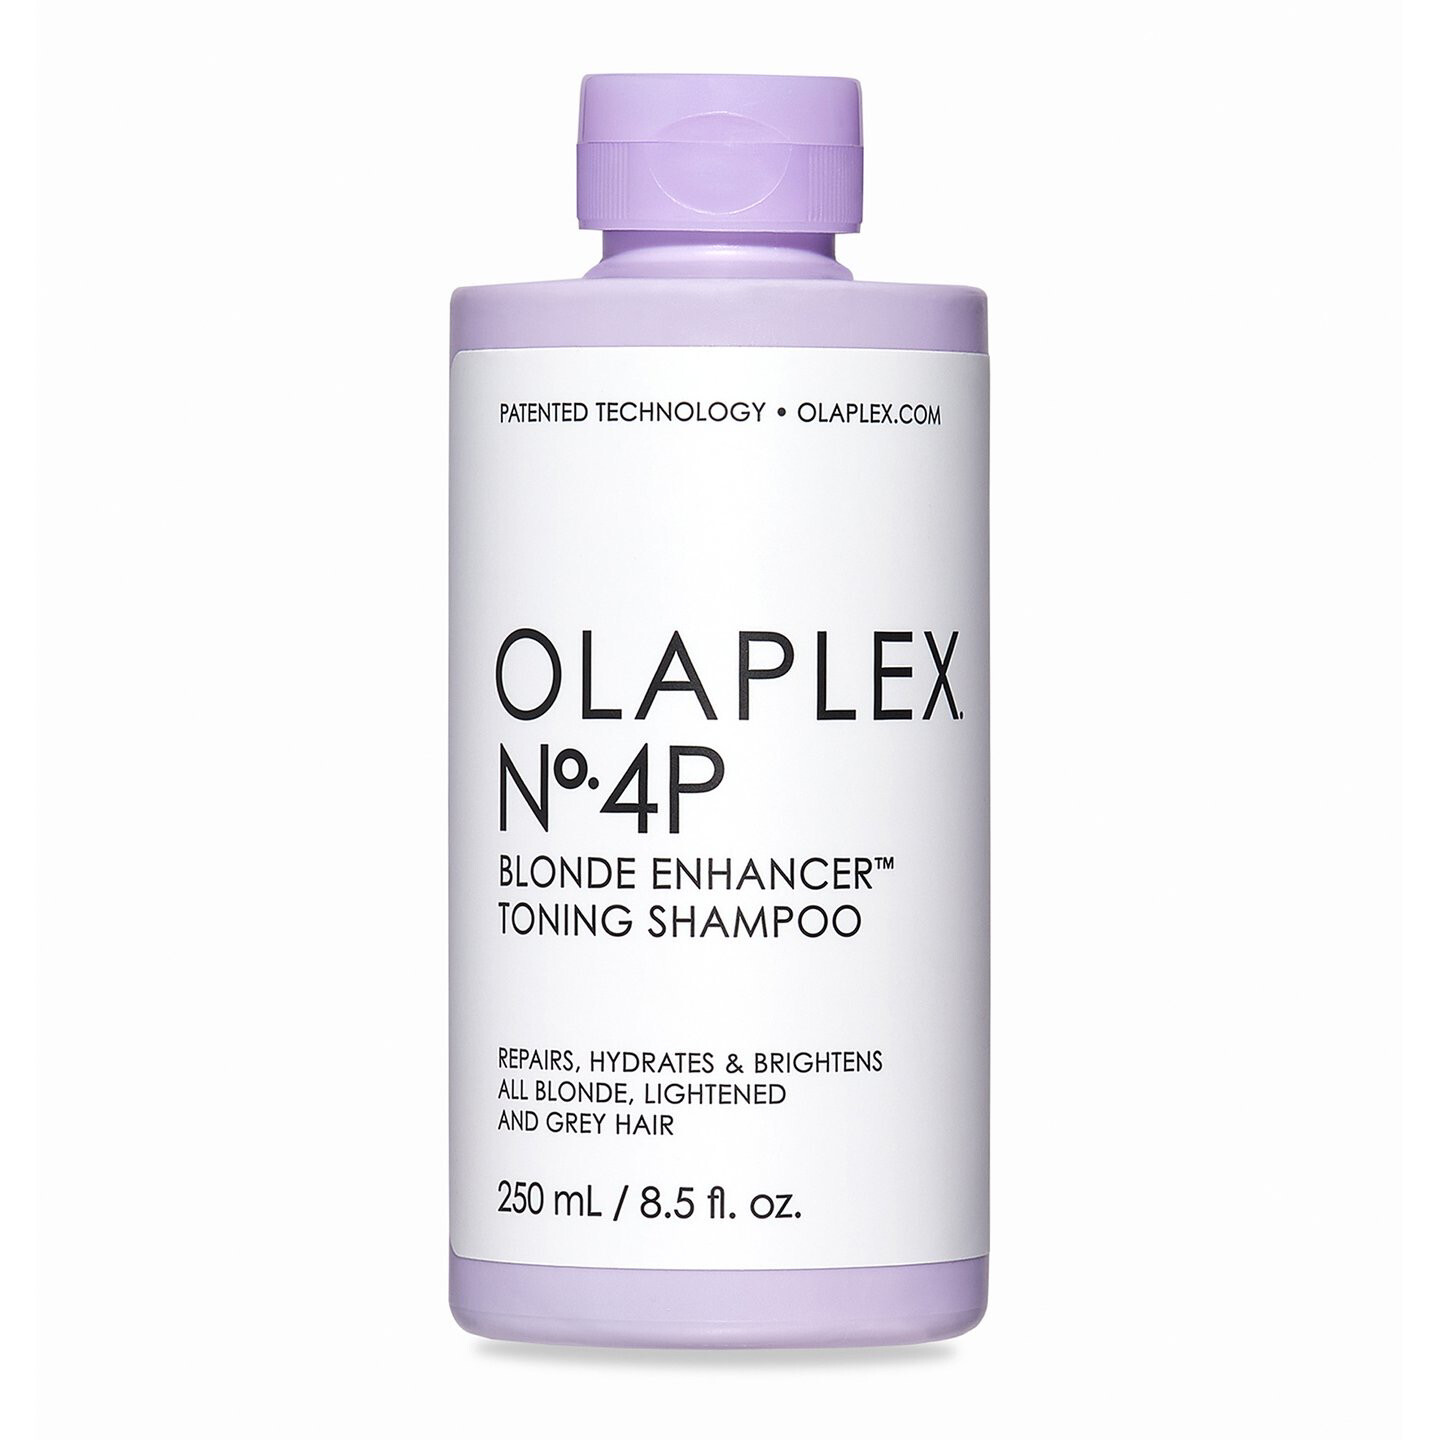 OLAPLEX N°4P Blonde Enhancer Toning Shampoo Shampooing Violet 250ml